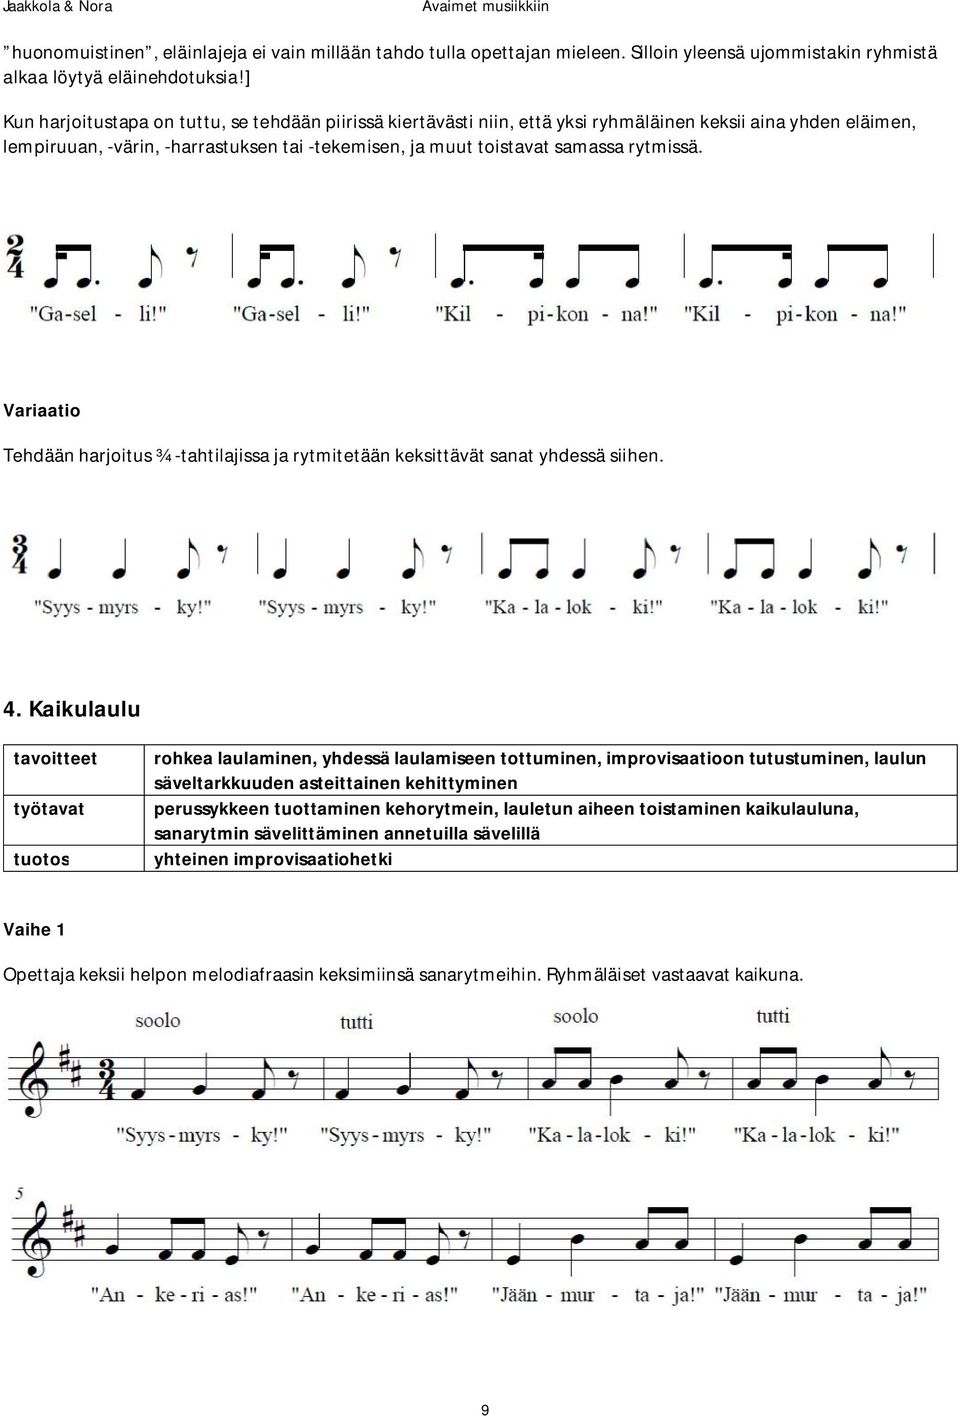 Avaimet musiikkiin. Pedagoginen oppimateriaali musiikkioppilaitosten  käyttöön. Soila Jaakkola ja Anna Nora - PDF Free Download